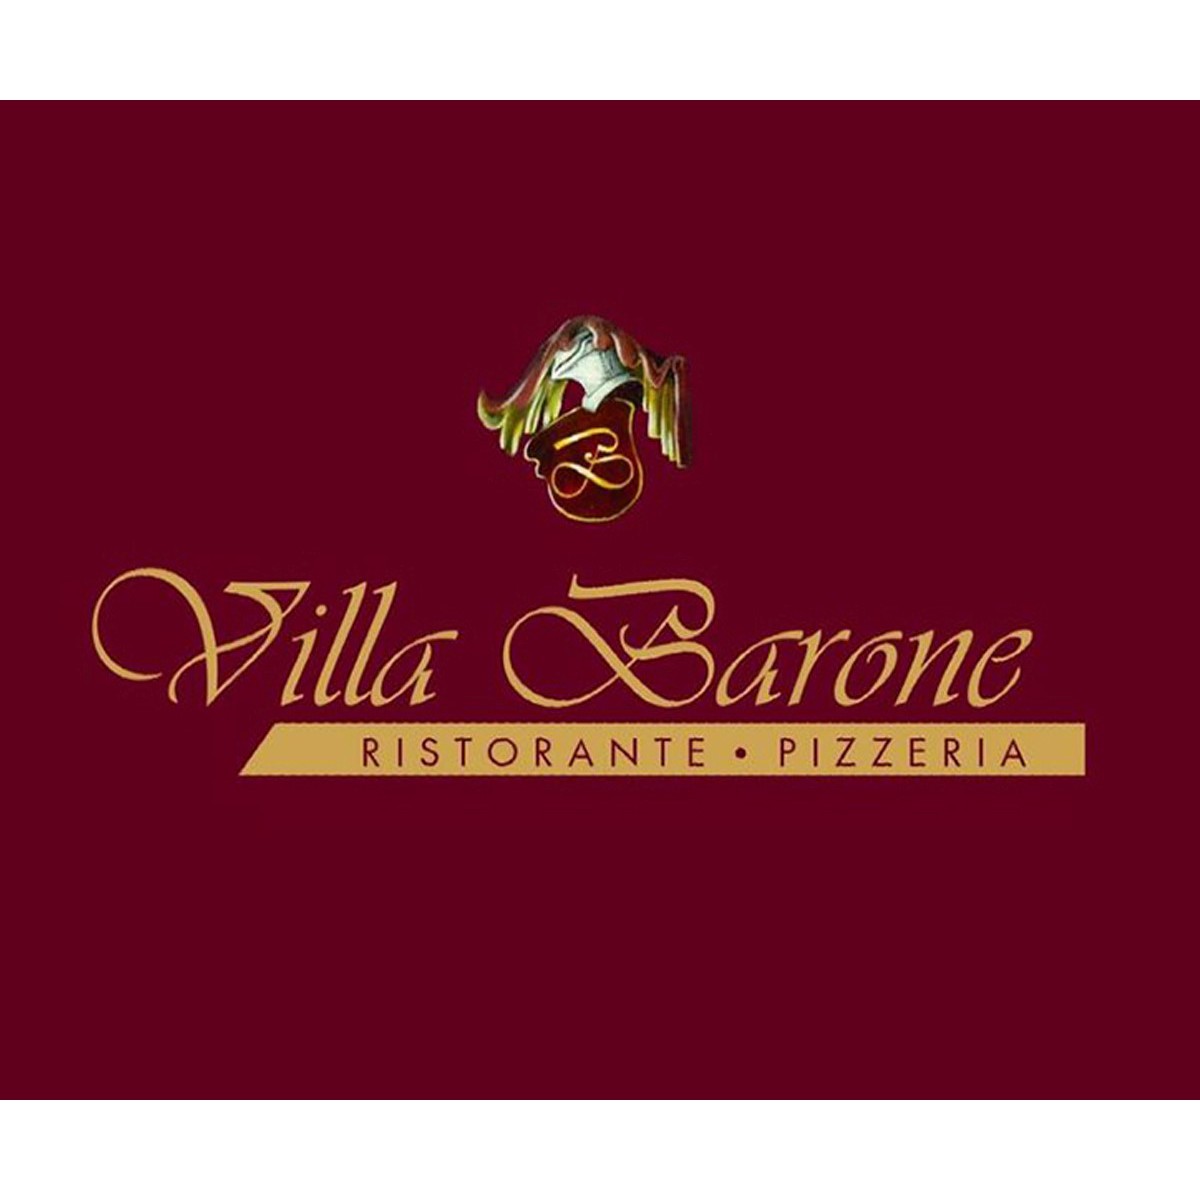 Ristorante Villa Barone Logo